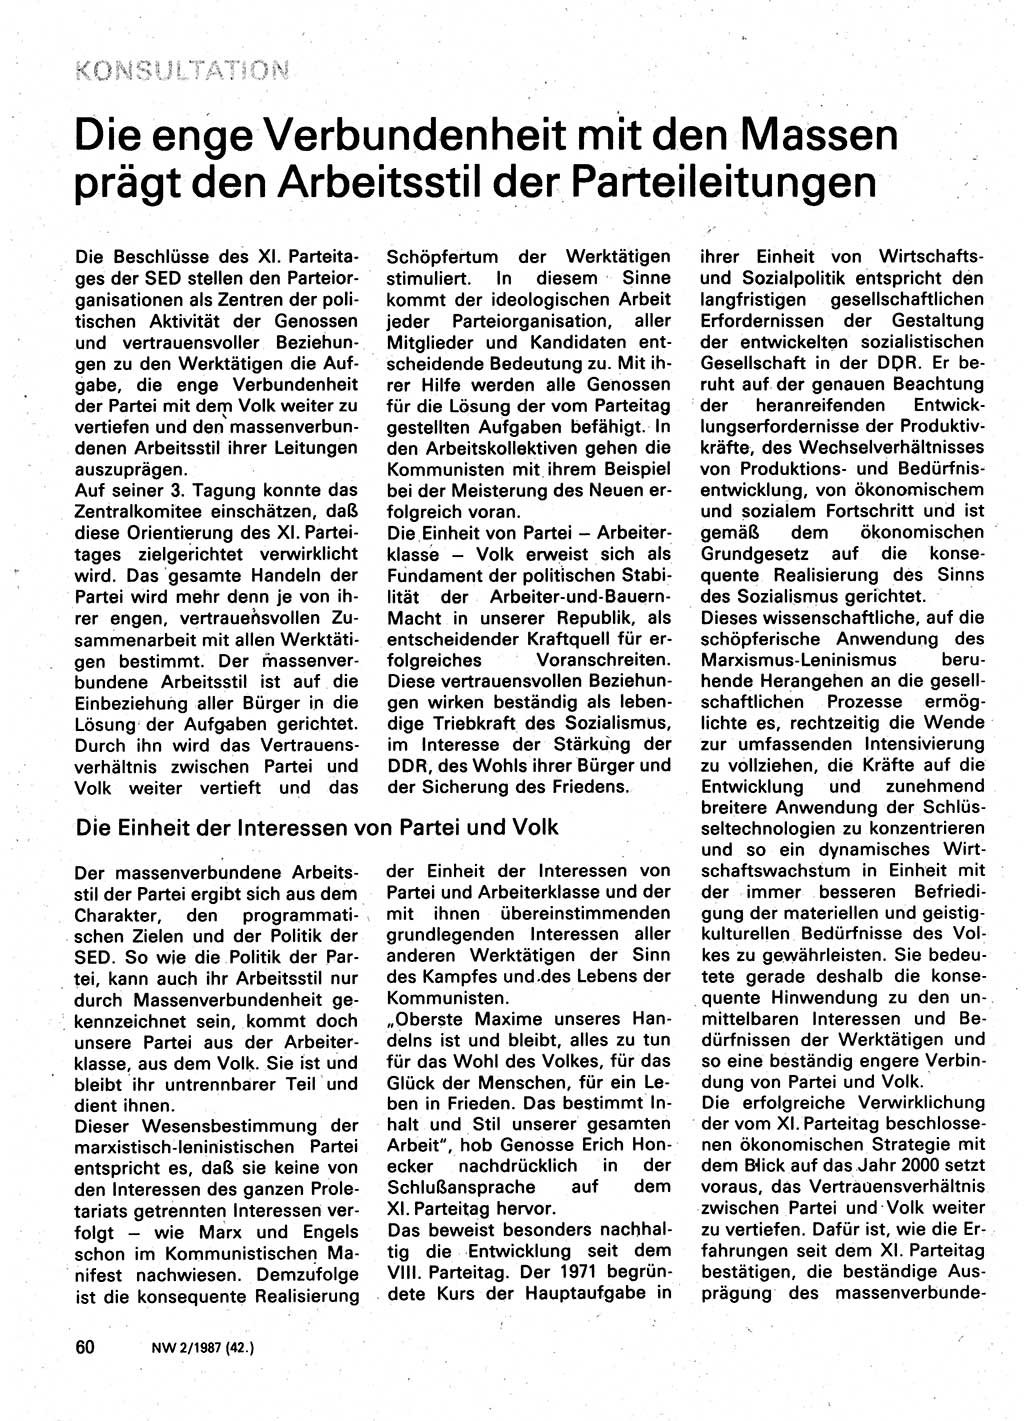 Neuer Weg (NW), Organ des Zentralkomitees (ZK) der SED (Sozialistische Einheitspartei Deutschlands) für Fragen des Parteilebens, 42. Jahrgang [Deutsche Demokratische Republik (DDR)] 1987, Seite 60 (NW ZK SED DDR 1987, S. 60)